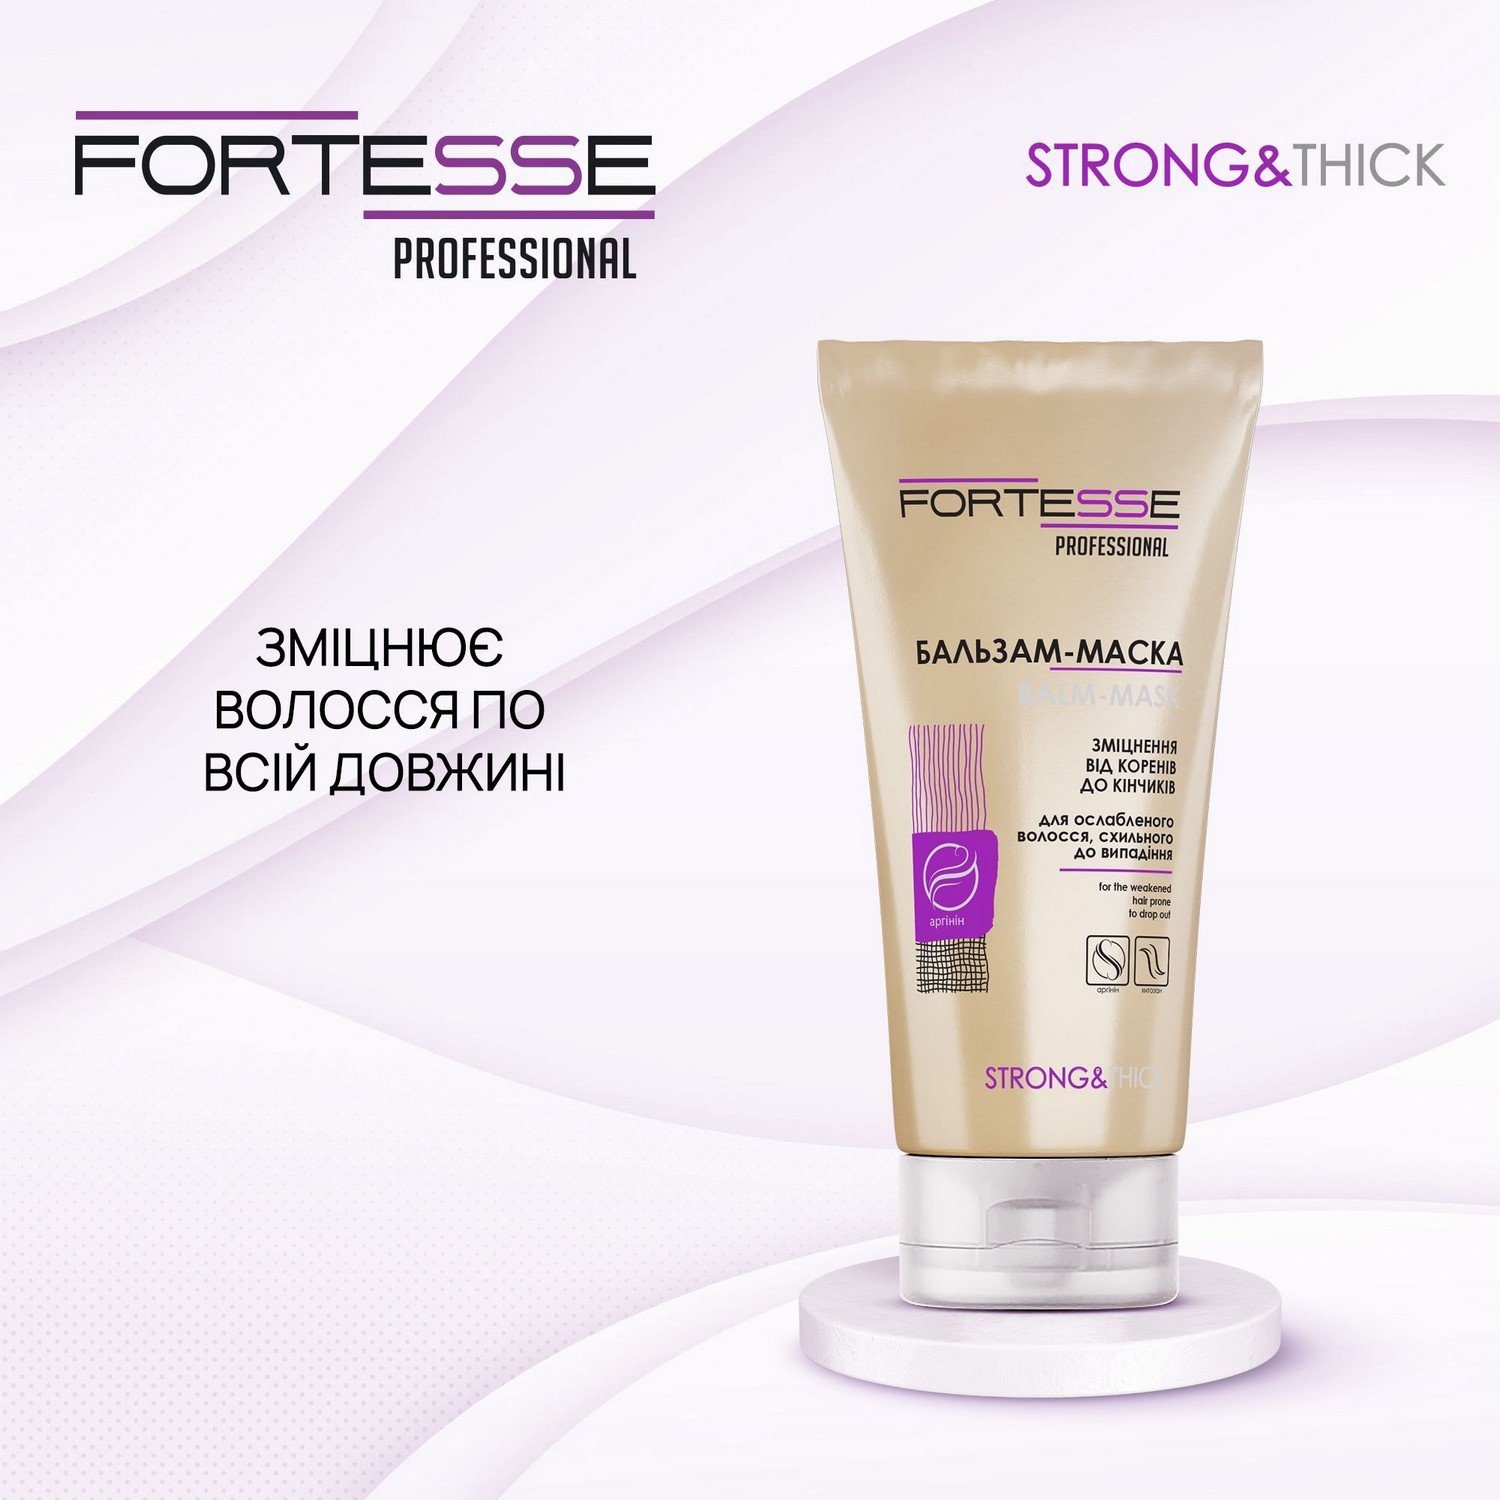 Укрепляющая бальзам-маска Fortesse Professional Strong&Thick для ослабленных волос, склонных к выпадению, 200 мл - фото 2